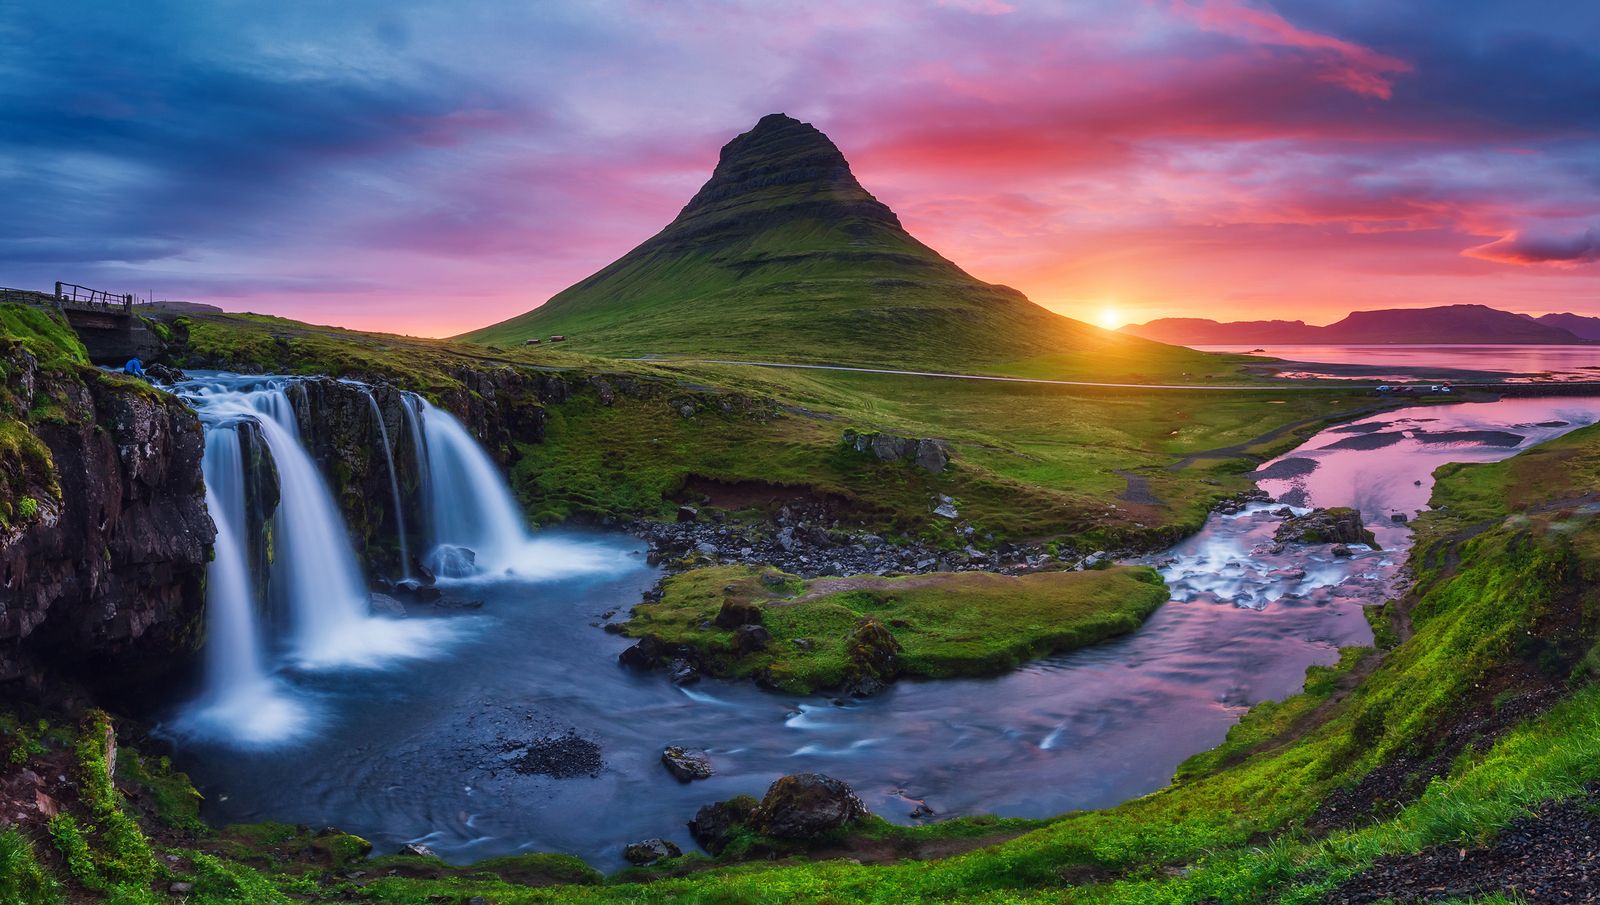 Islandia, una maravilla de la naturaleza ideal para explorar en autocaravana (Bigstock)